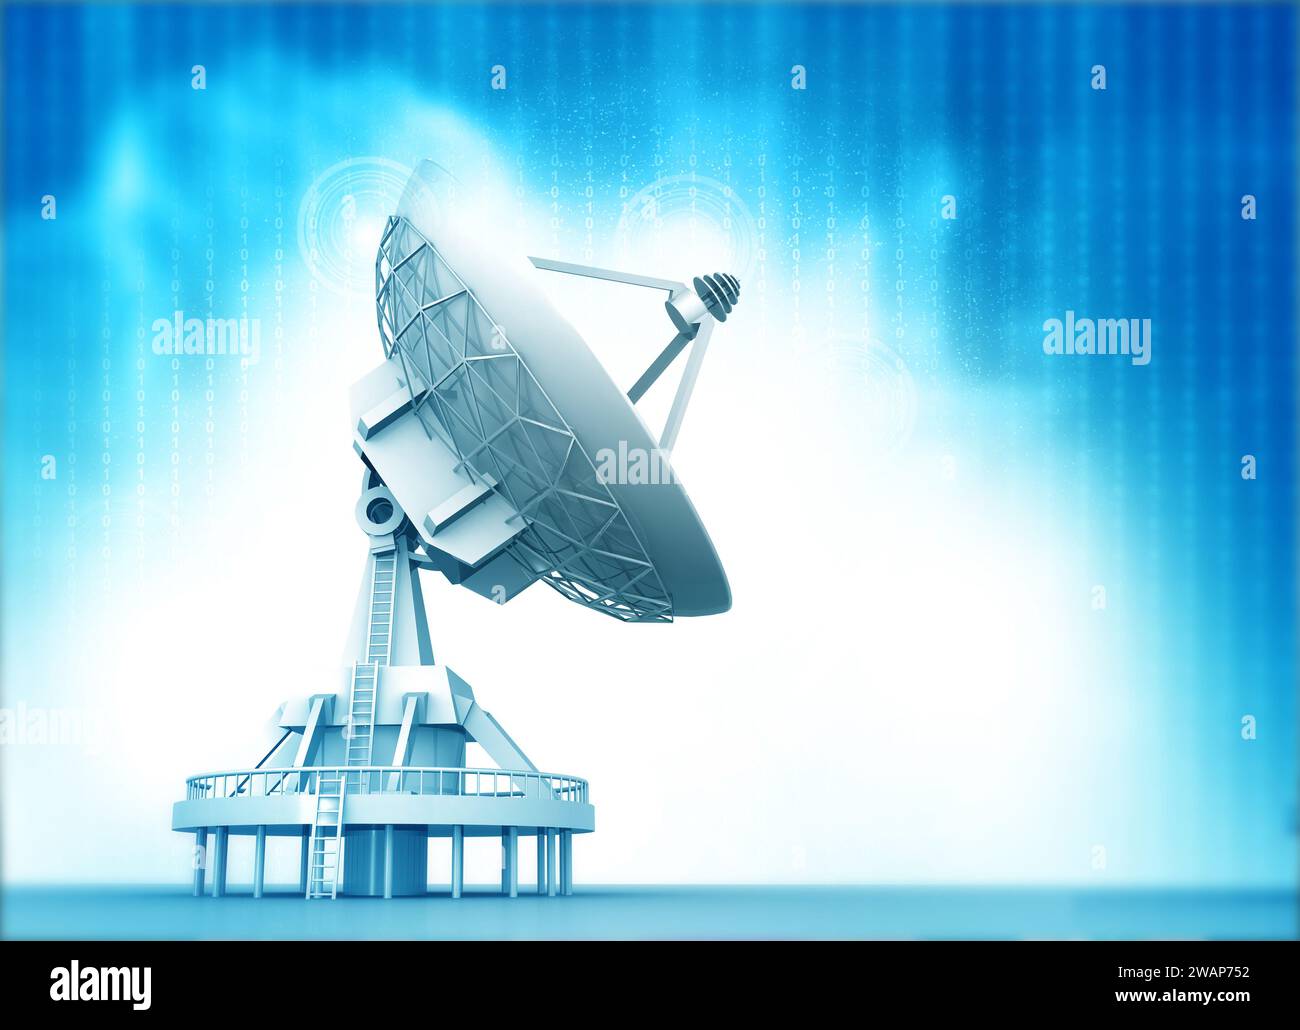 Antenne parabolique recevant des signaux. illustration 3d. Banque D'Images